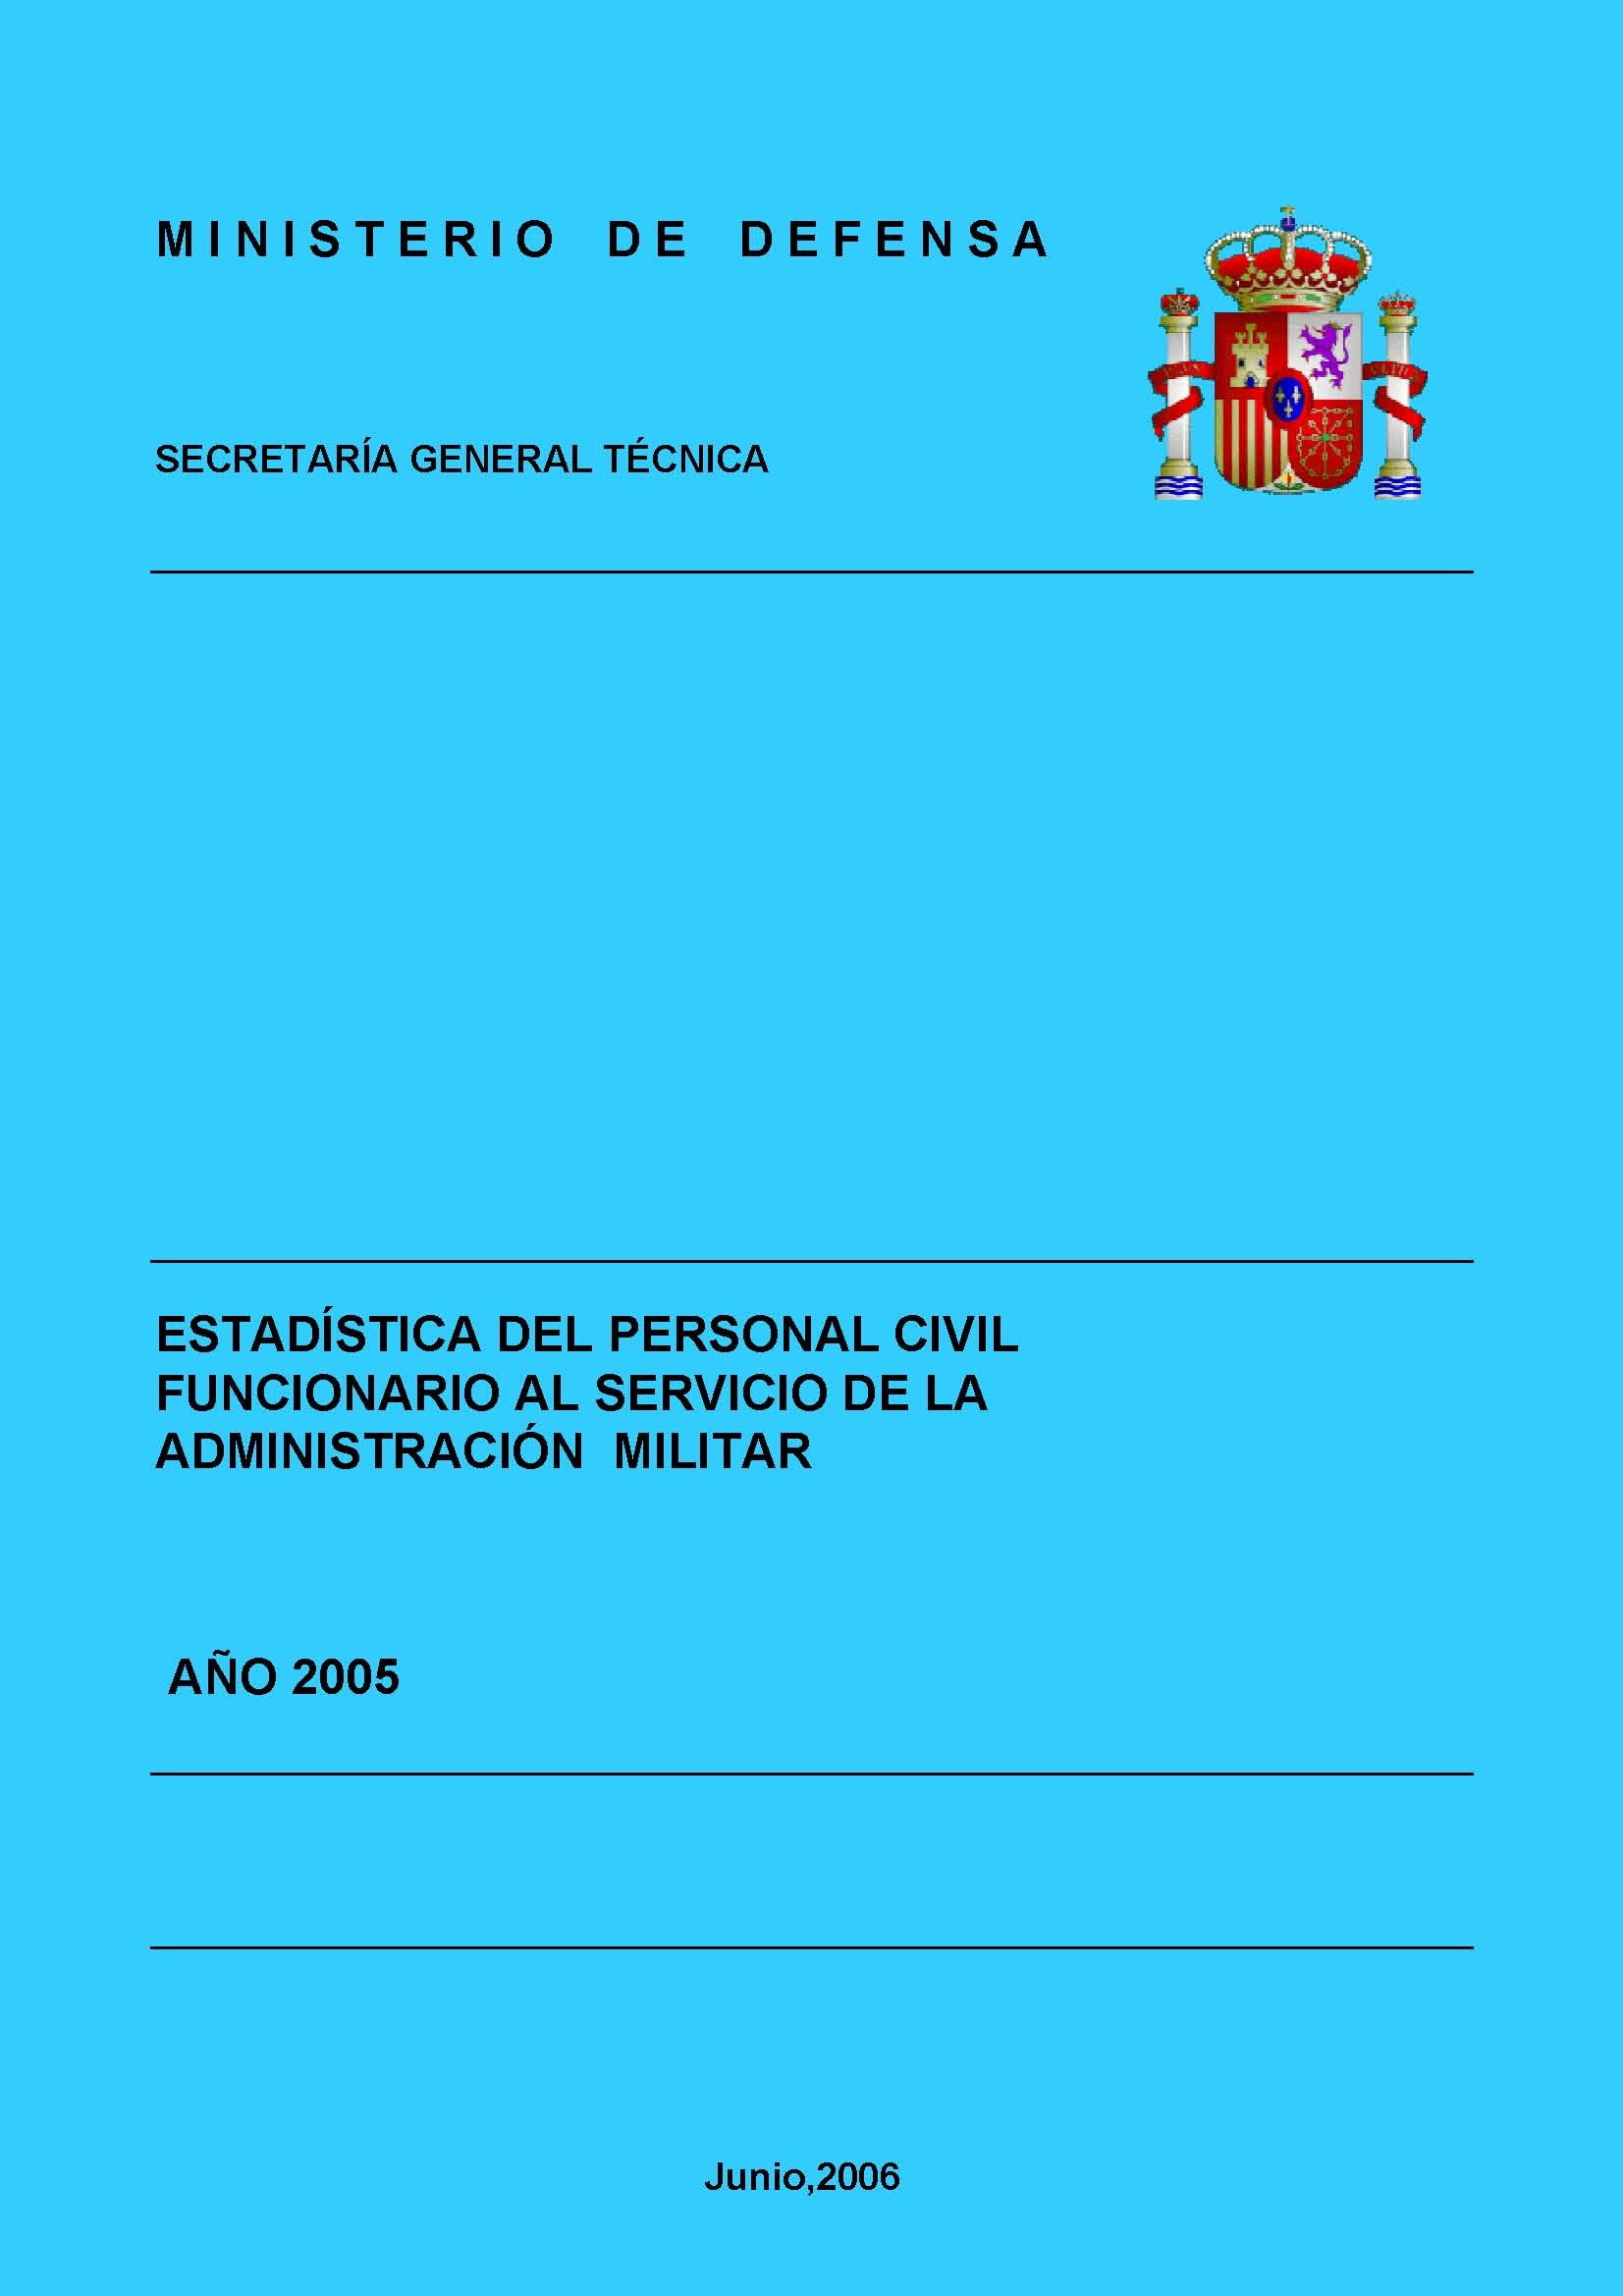 ESTADÍSTICA DEL PERSONAL CIVIL FUNCIONARIO AL SERVICIO DE LA ADMINISTRACIÓN MILITAR 2005